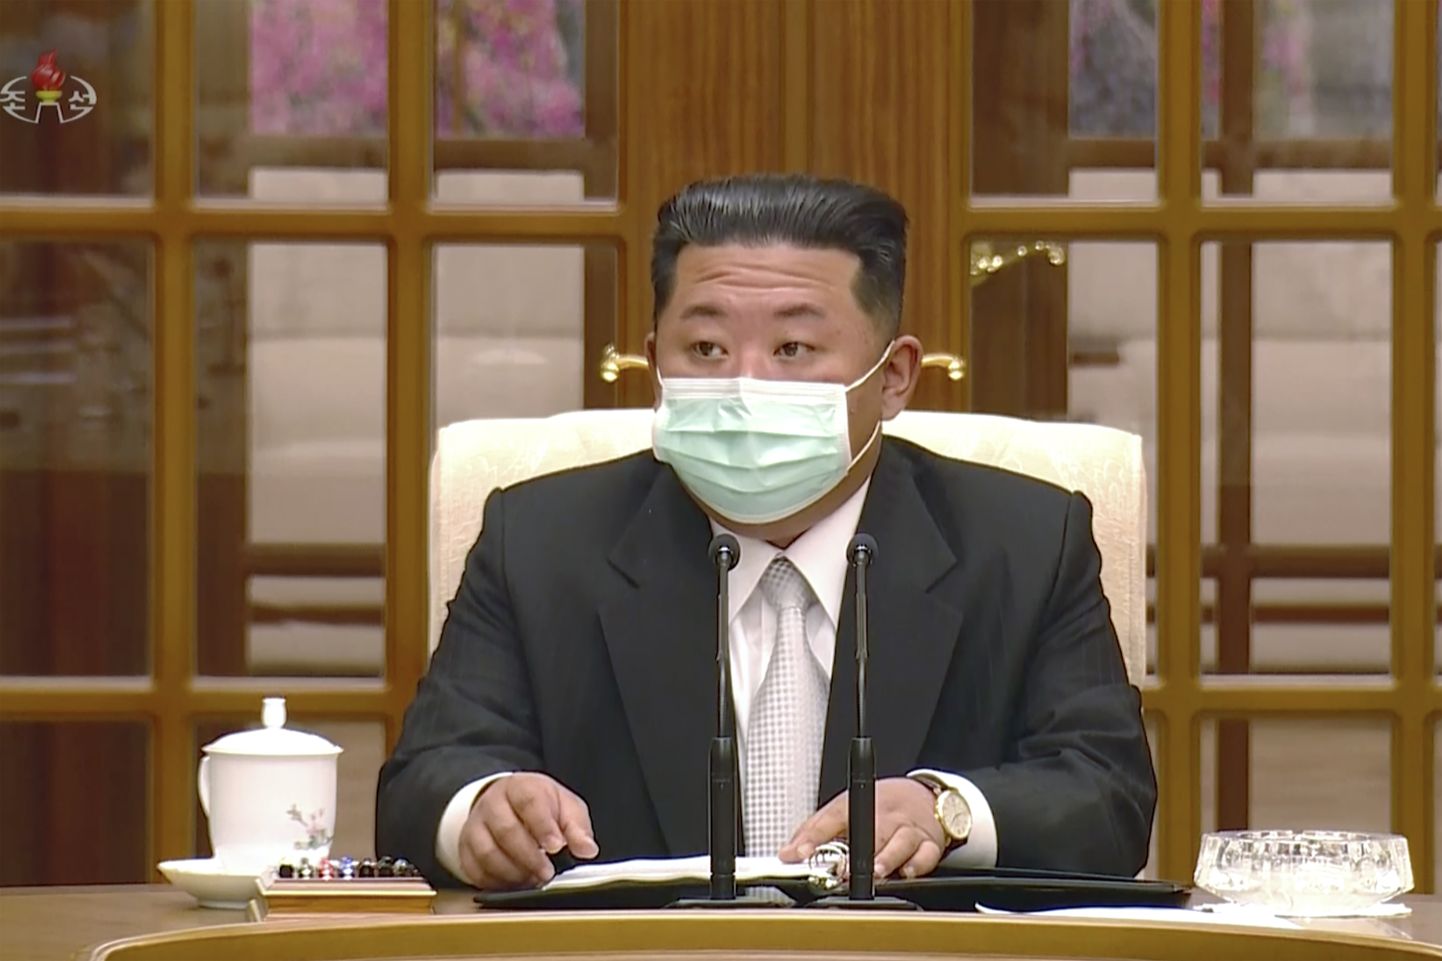 Põhja-Korea liider Kim Jong Un kandis kohtumisel maski.